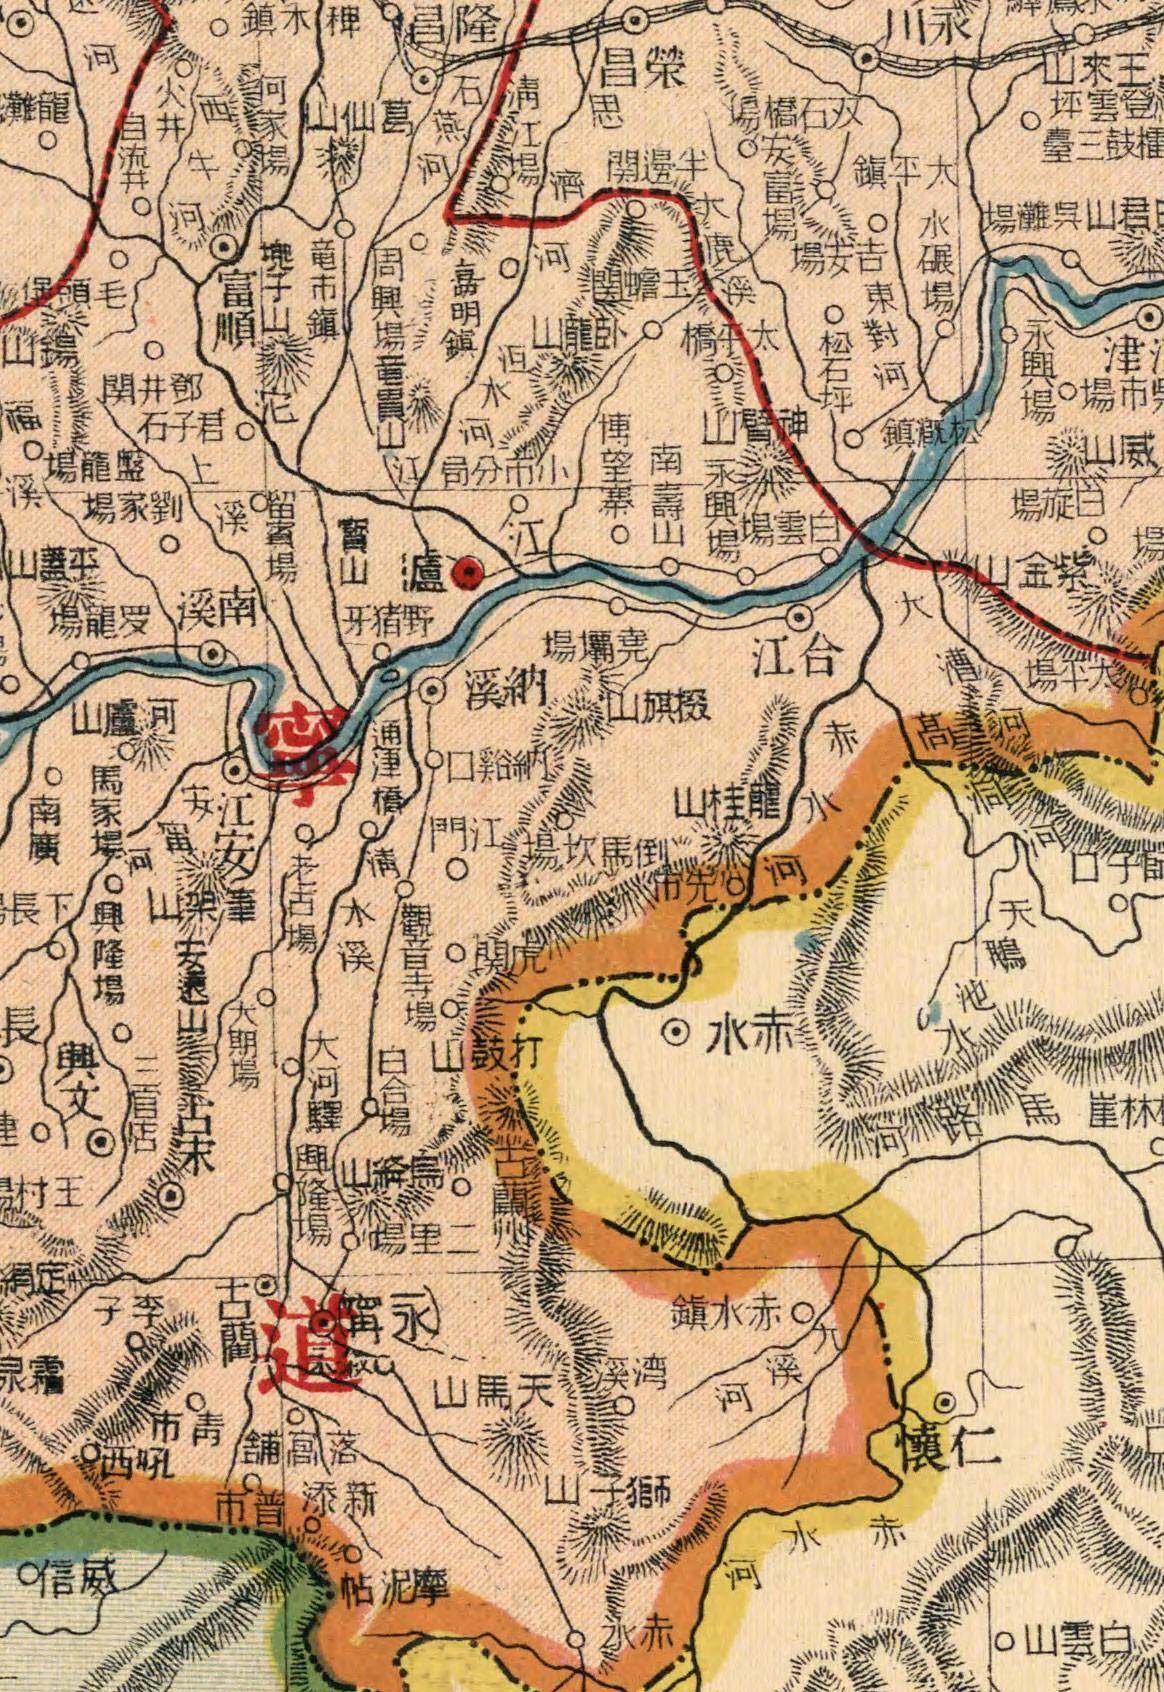 1917年,四川省老地图,精确到镇村,快看看有您老家吗?